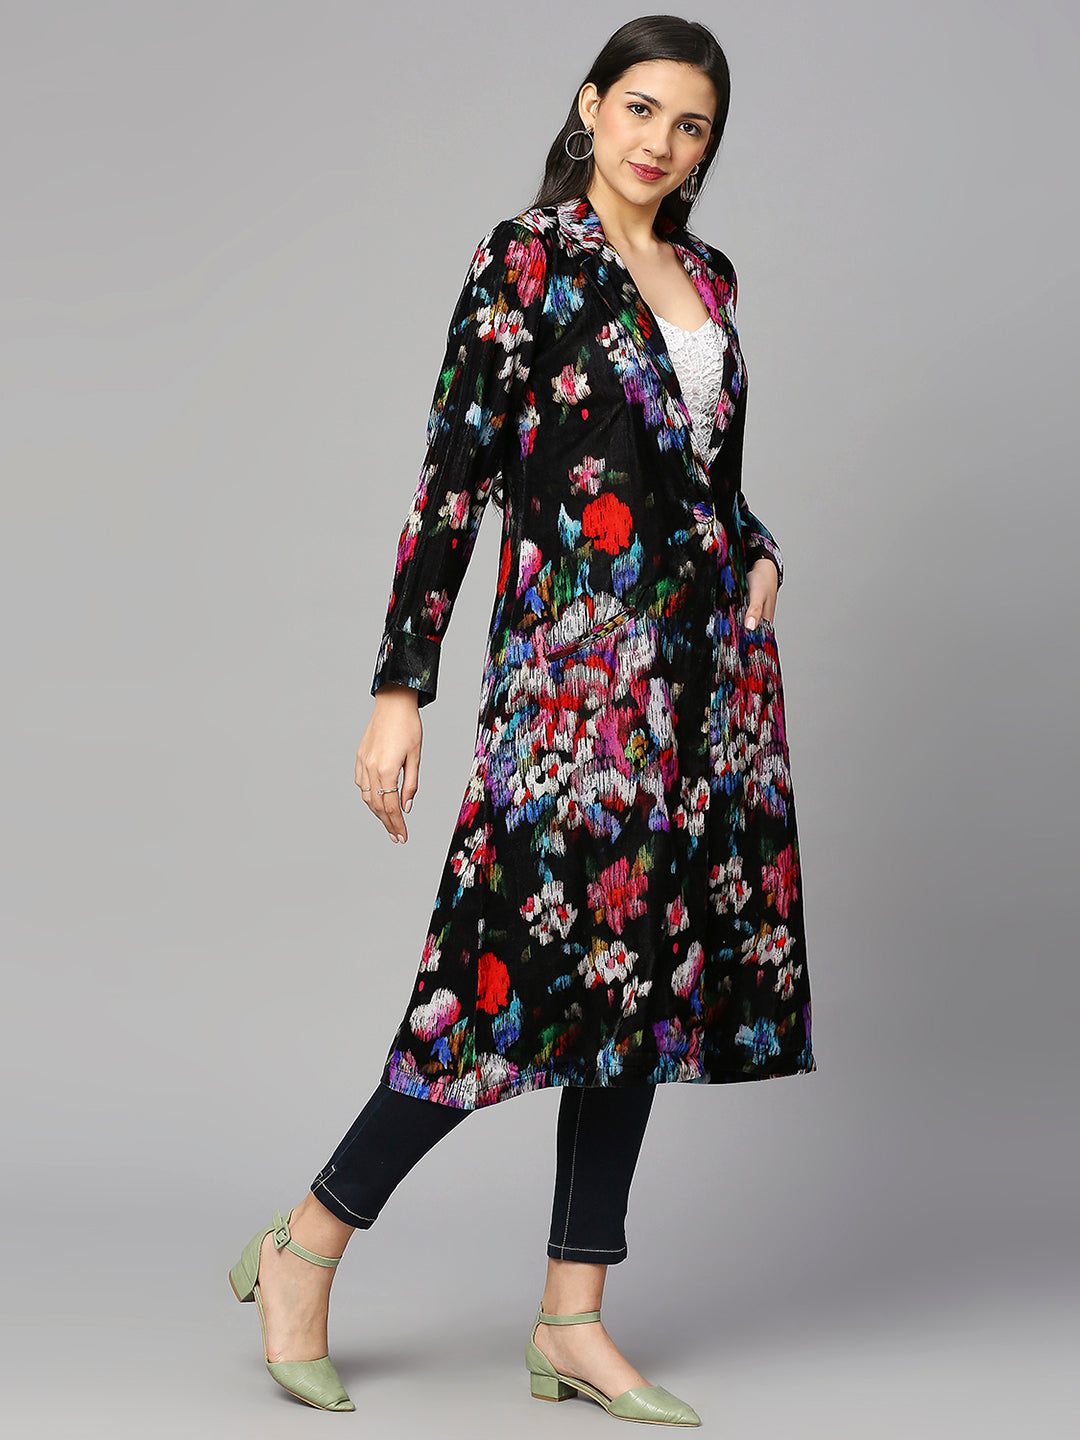 Black Multicolor Floral Designed Long Jacket